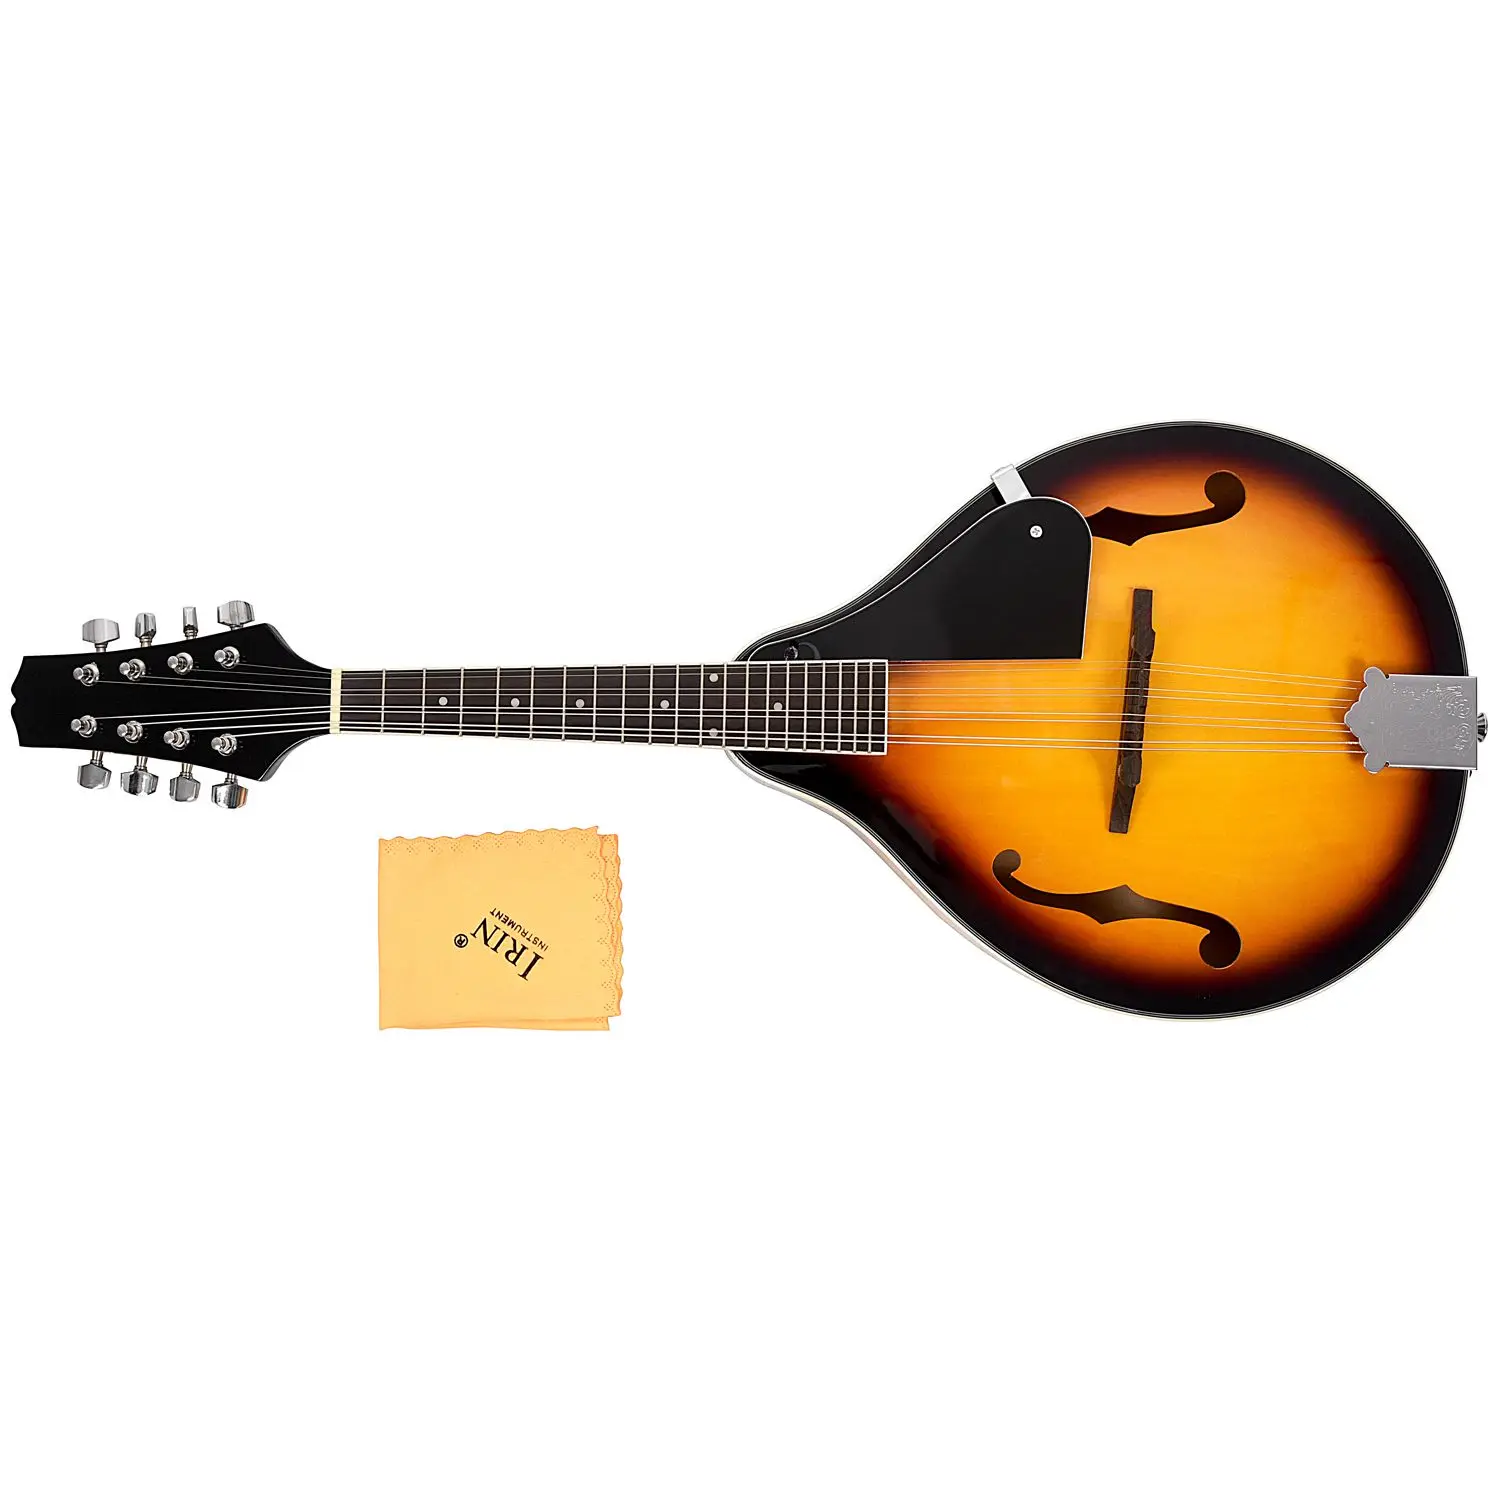 IRIN A-style mandolin Sunburst липа дерево с протиркой ткани регулируемый струнный инструмент 8 струн гитара для начинающих